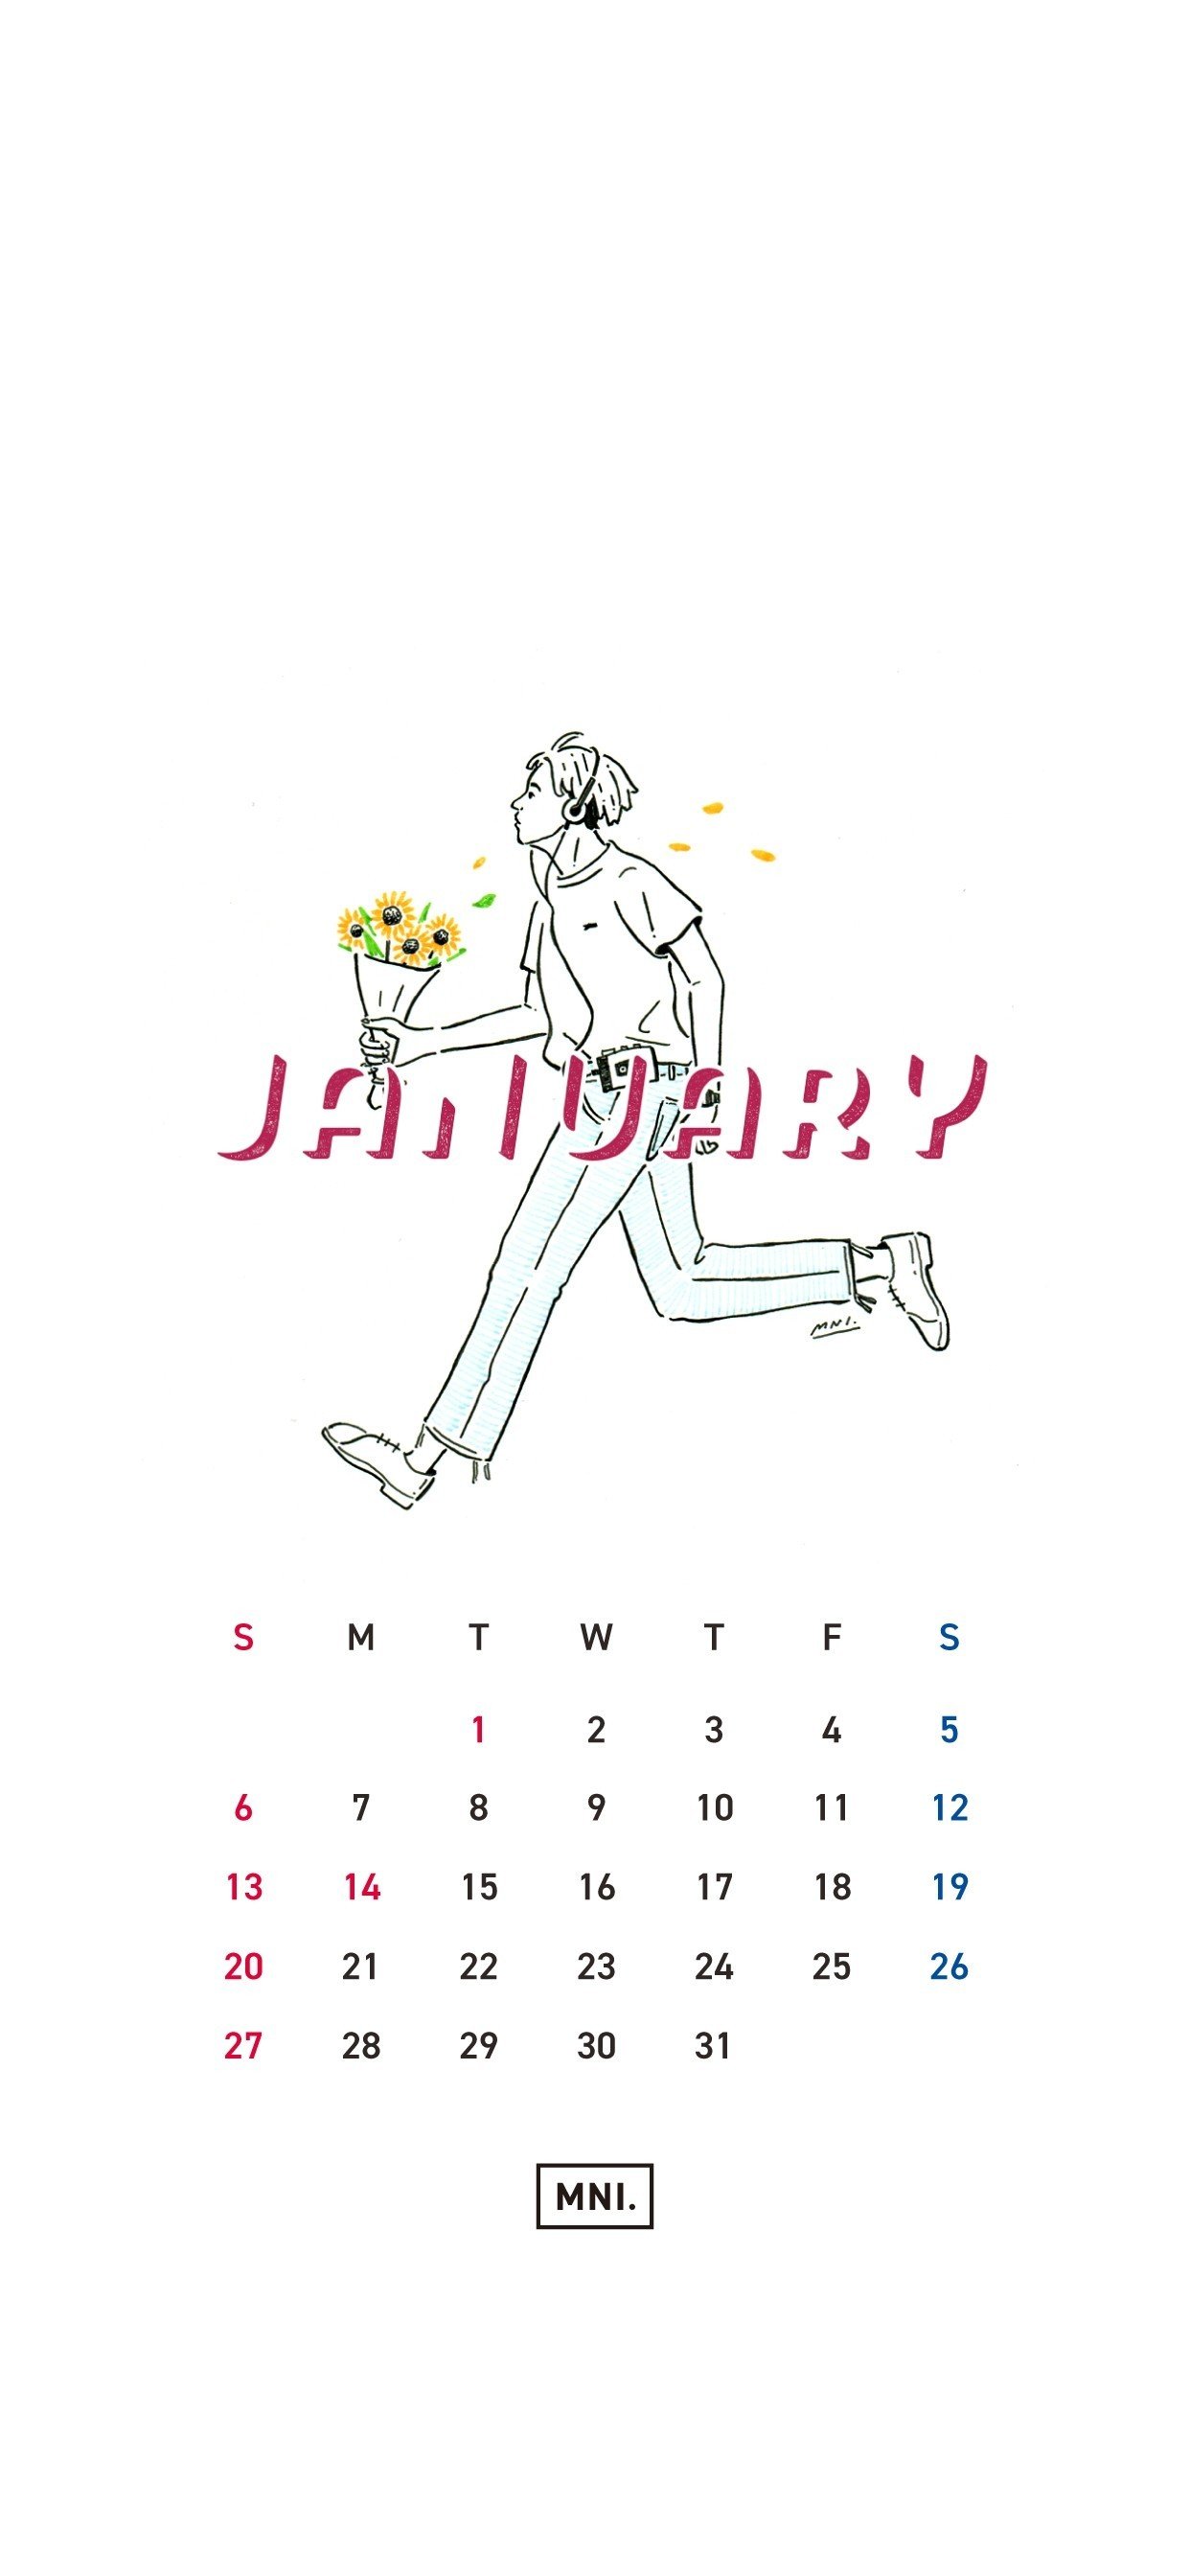 Iphoneカレンダー19年1月 中村雅紀 Masaki Nakamura Note